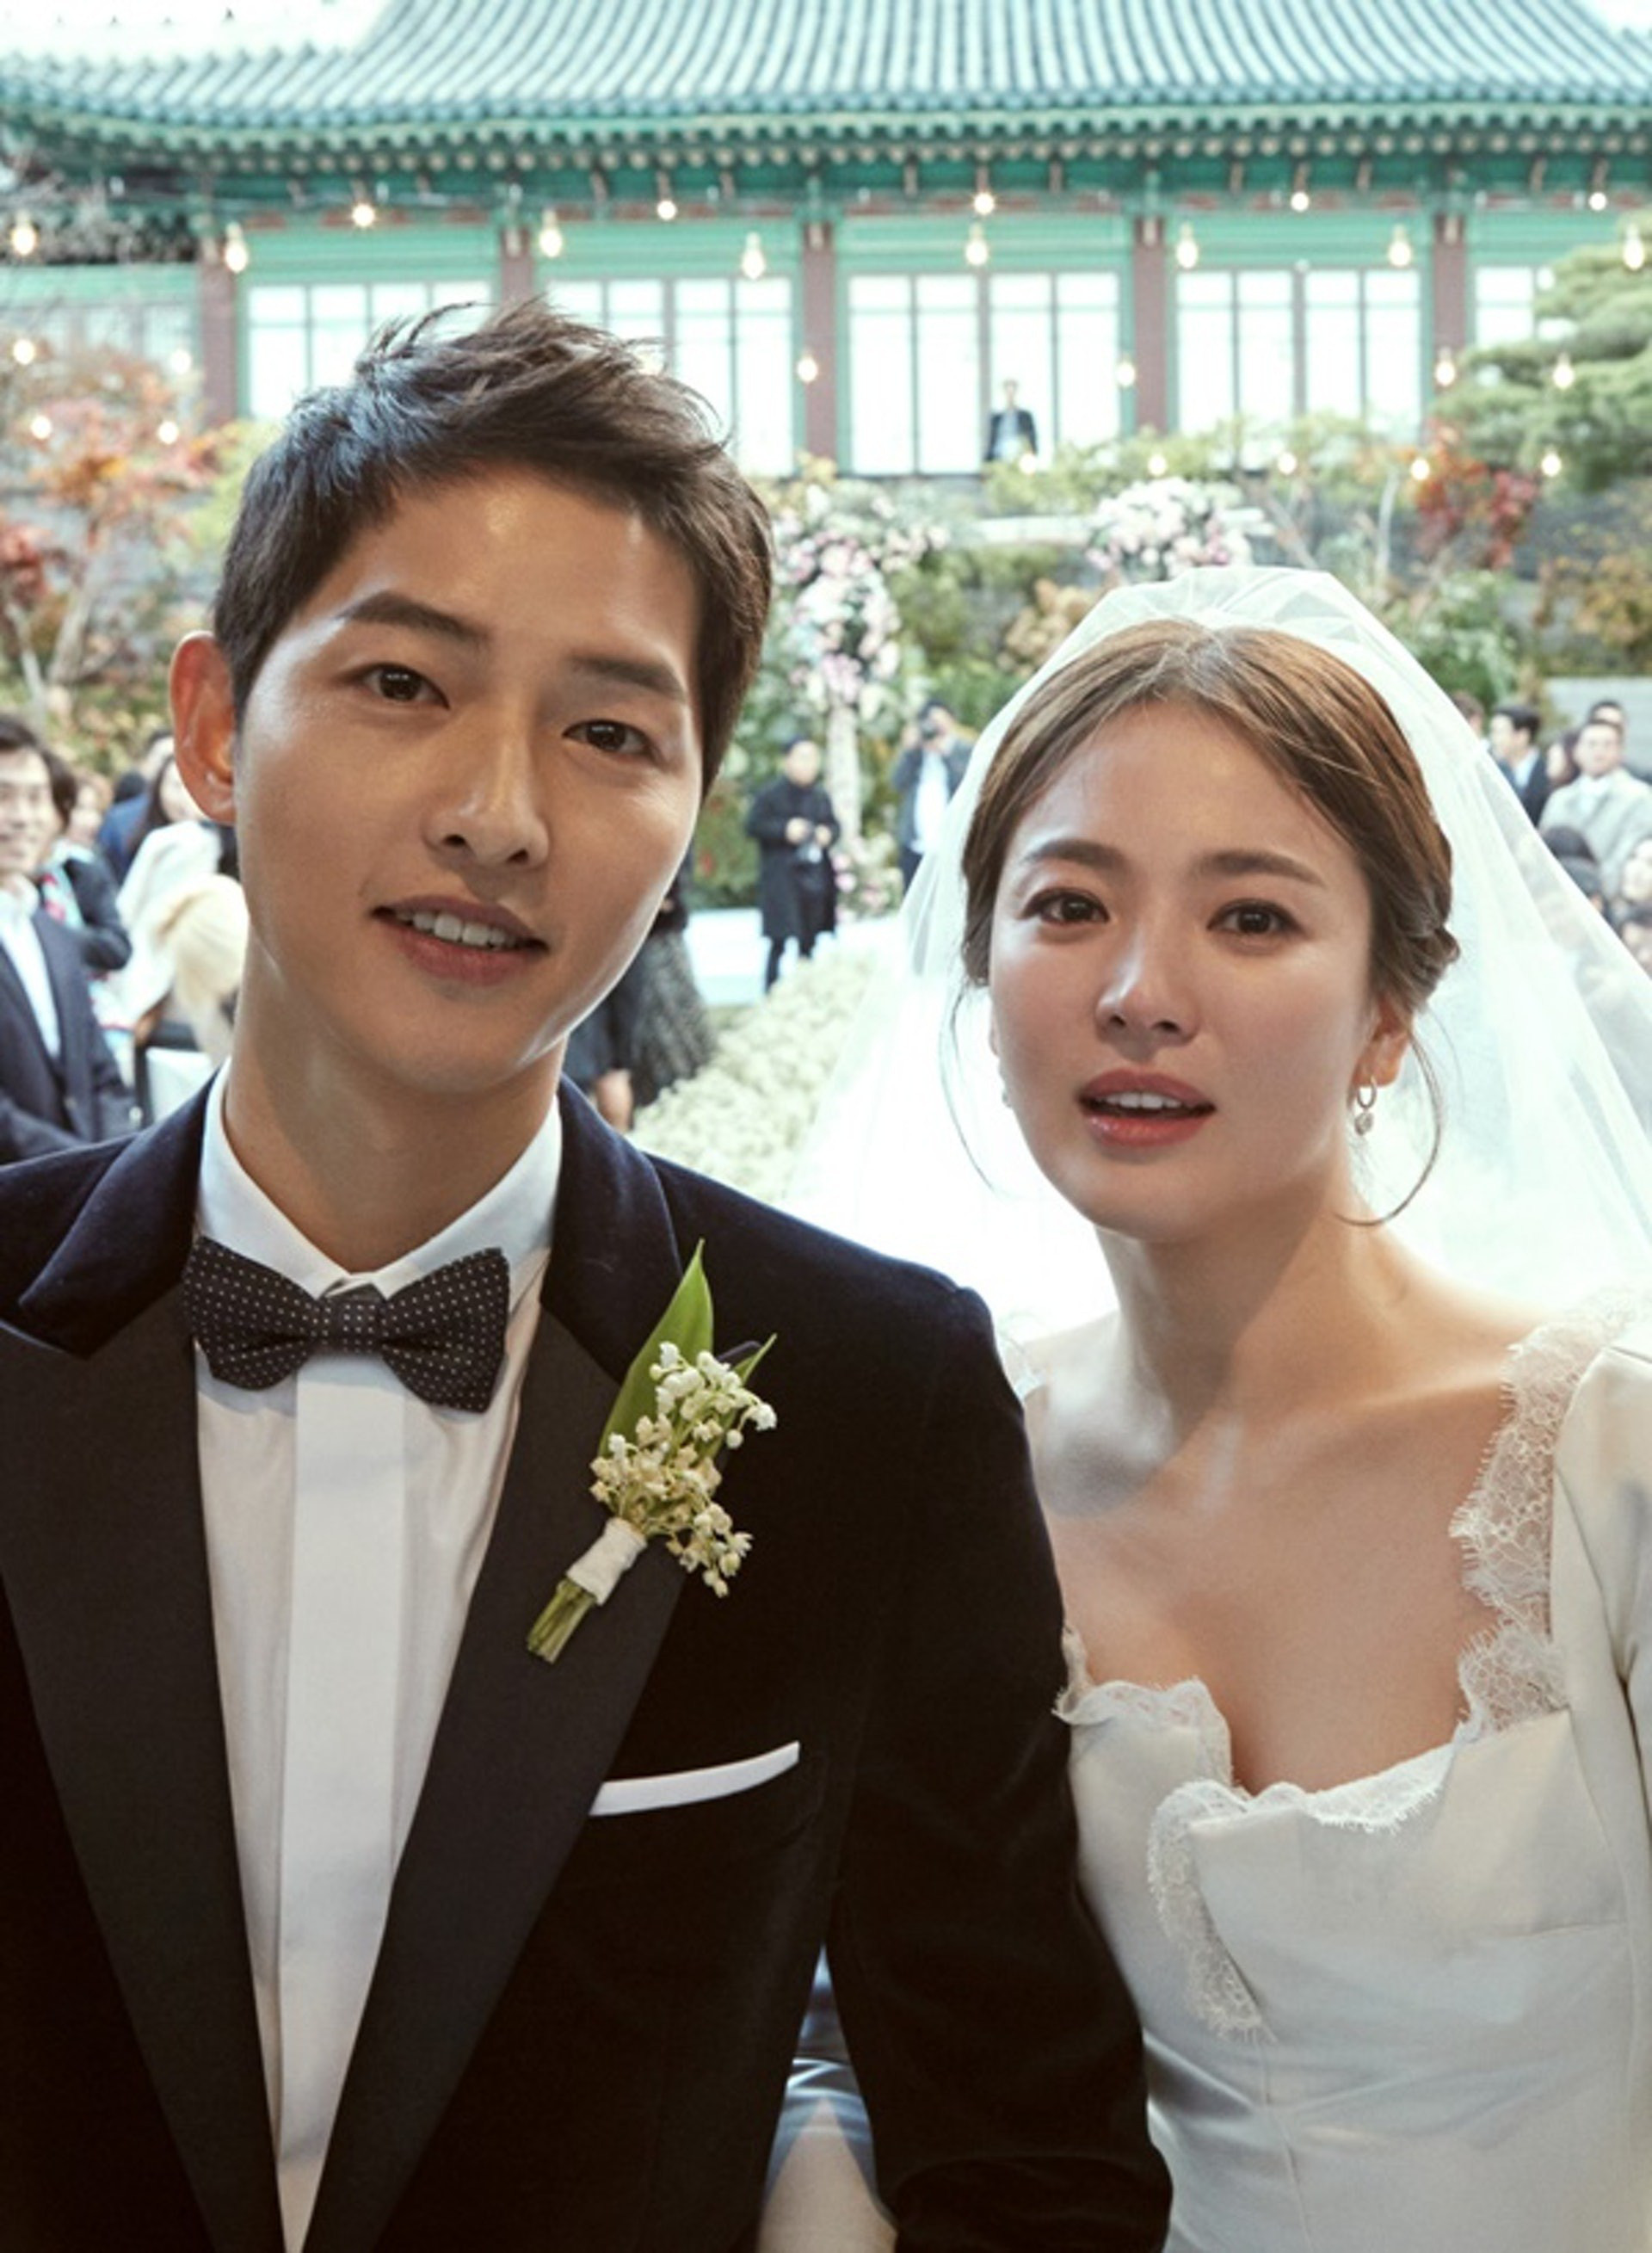 Soi kỹ mới thấy, Song Hye Kyo dạo này có loạt dấu hiệu 'đáng ngờ': Phủi sạch quan hệ với chồng cũ, phơi phới như đang yêu - Ảnh 17.